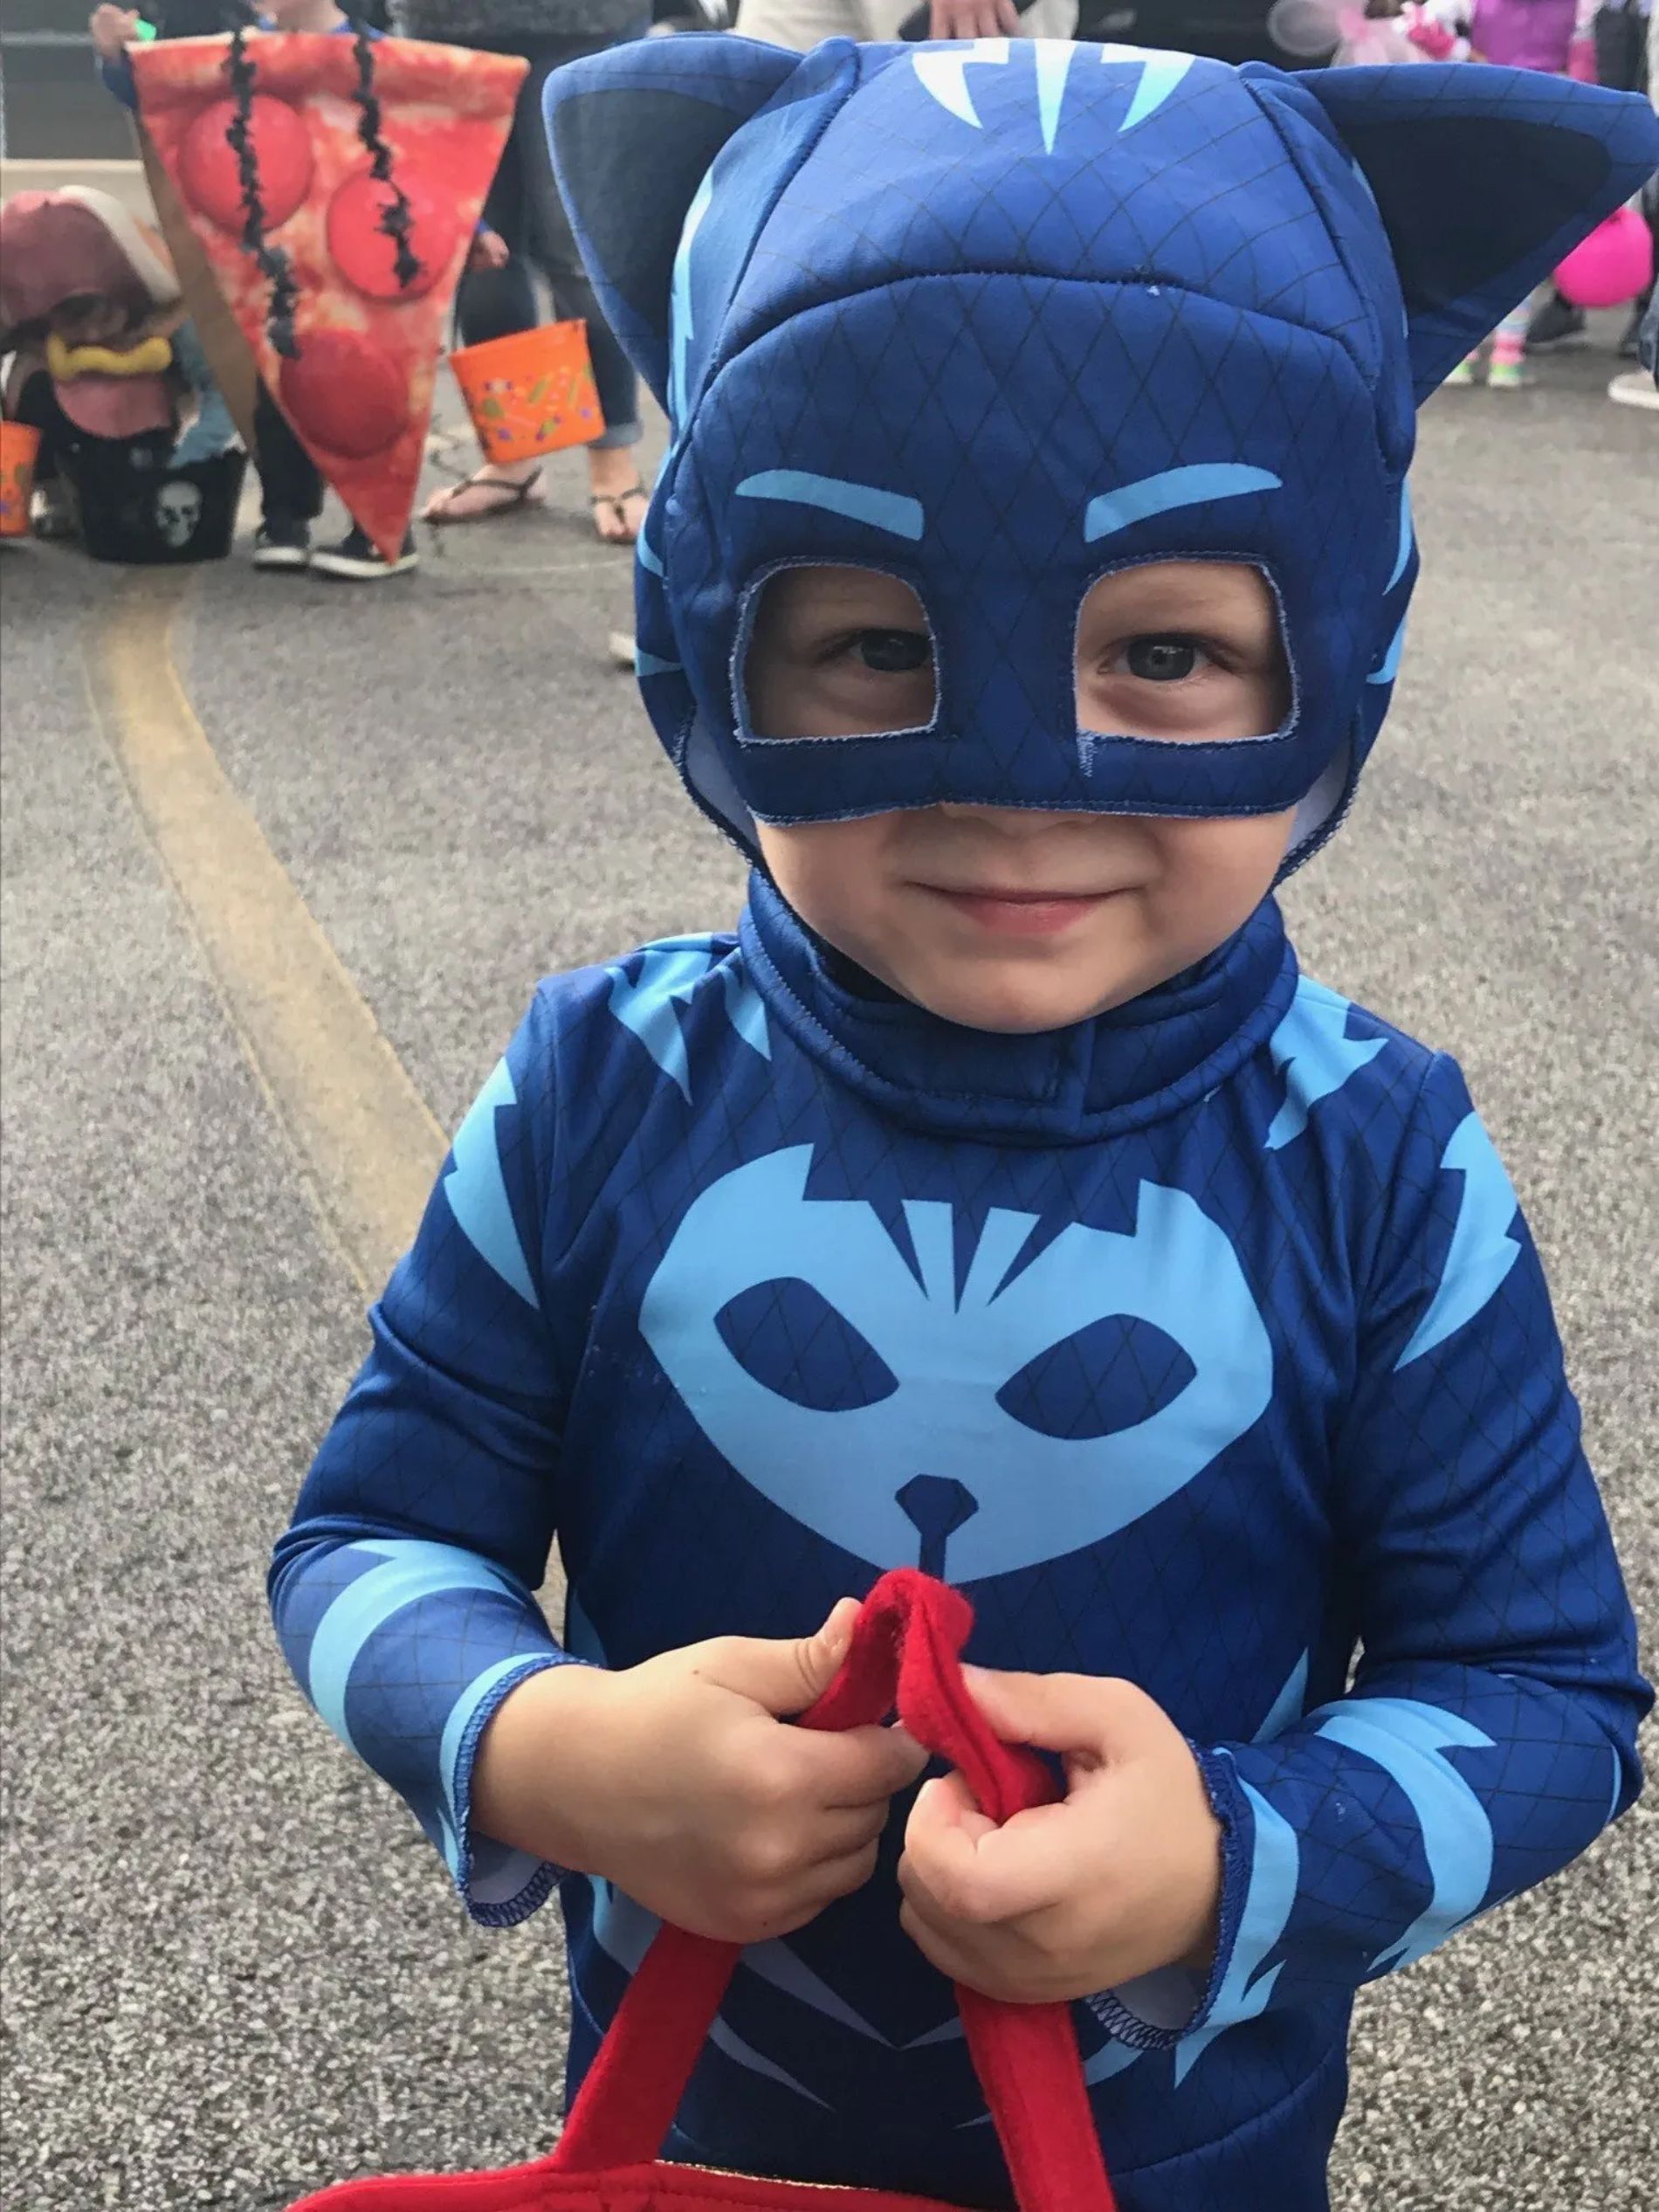 Child in a blue cat costume